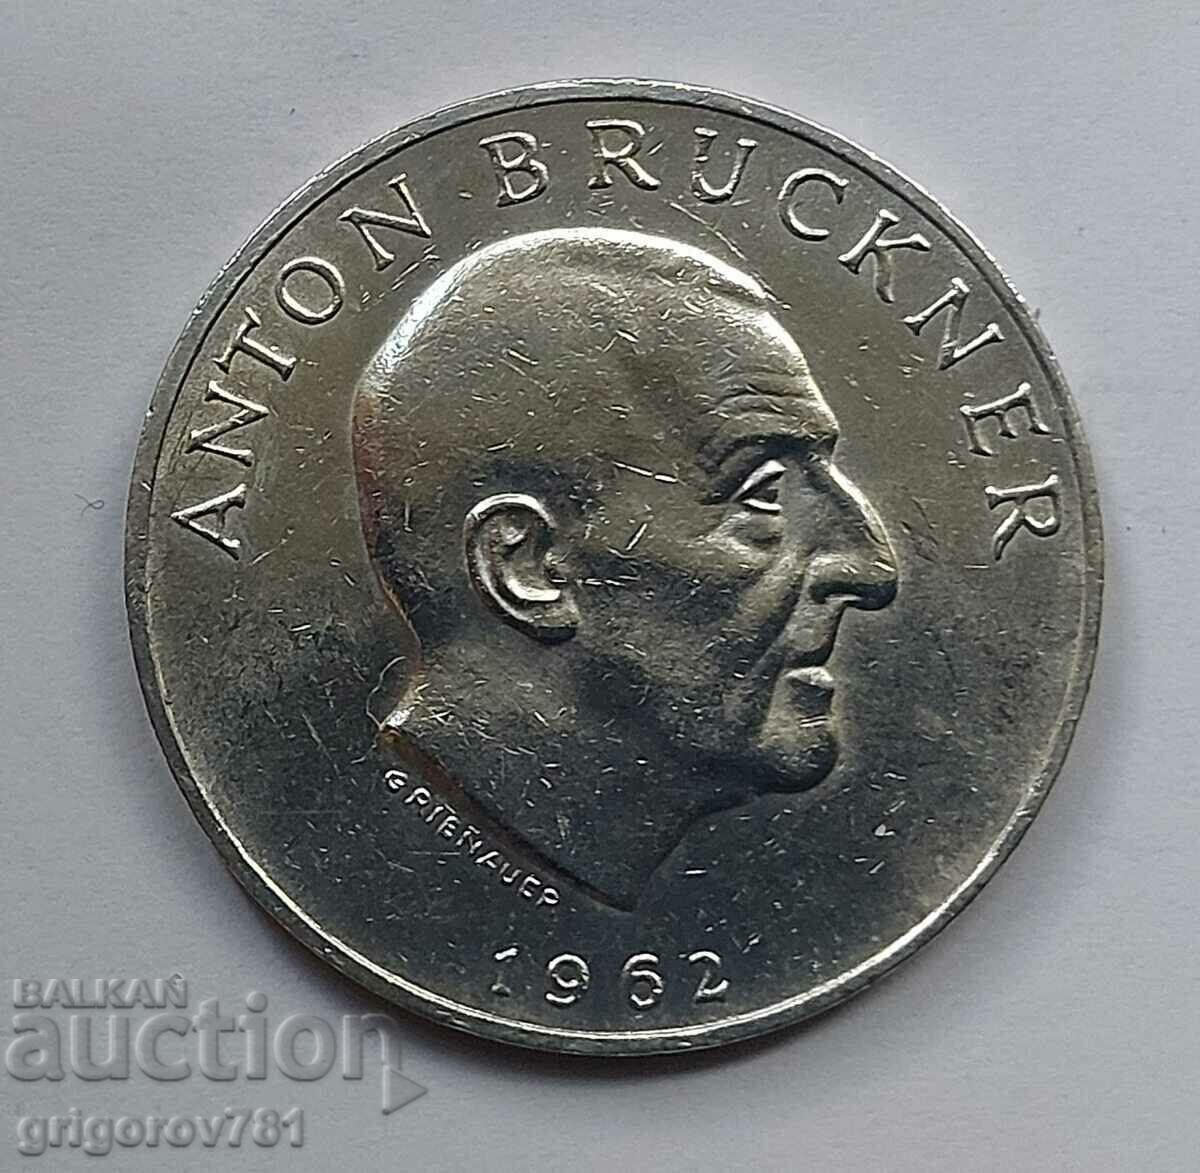 Ασημένιο 25 σελίνια Αυστρία 1962 - Ασημένιο νόμισμα #21